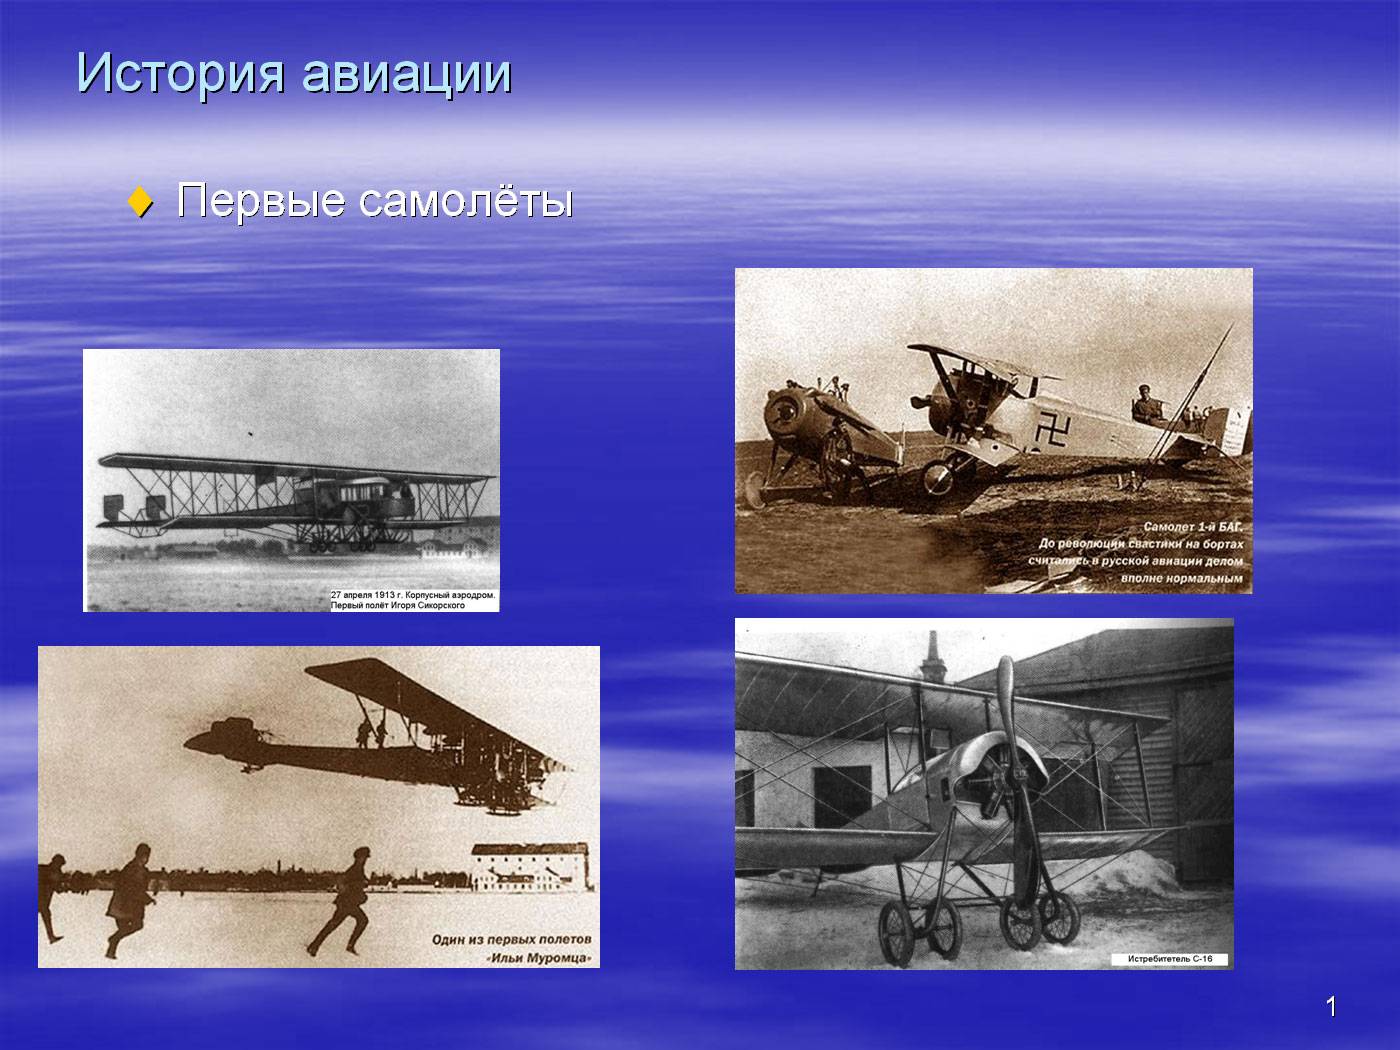 Первый самолет название. История авиации. Первый самолет. Презентация на тему самолеты. История развития авиации.